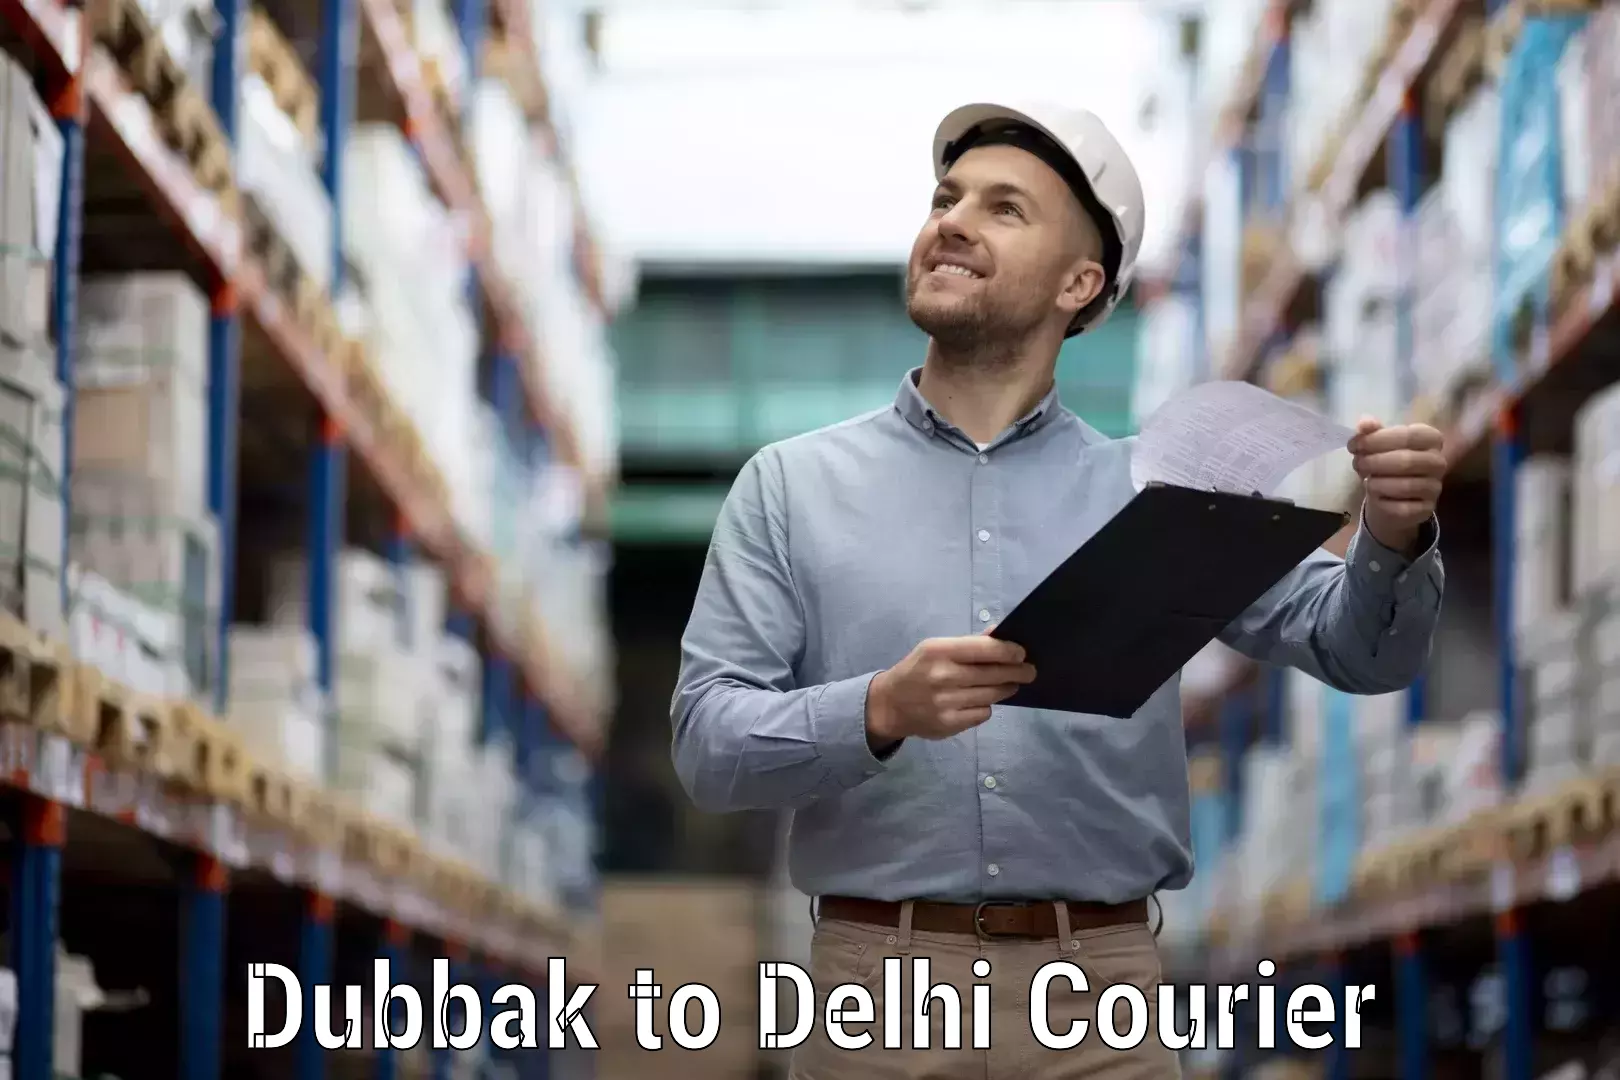 Cargo delivery service Dubbak to East Delhi